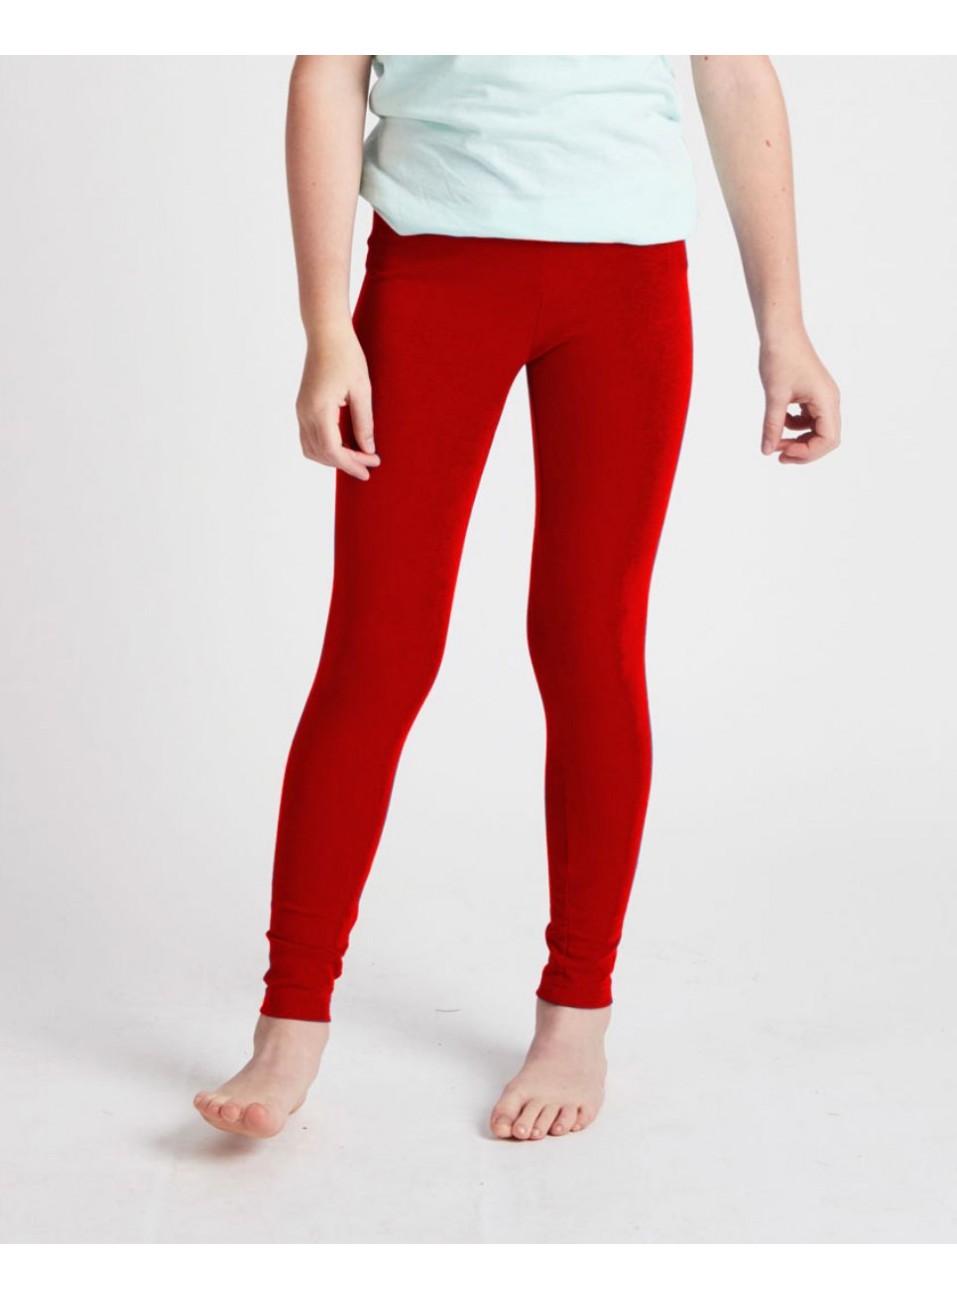 Kids Red/White/Blue Stripe Side Leggings | Cheryl Kids